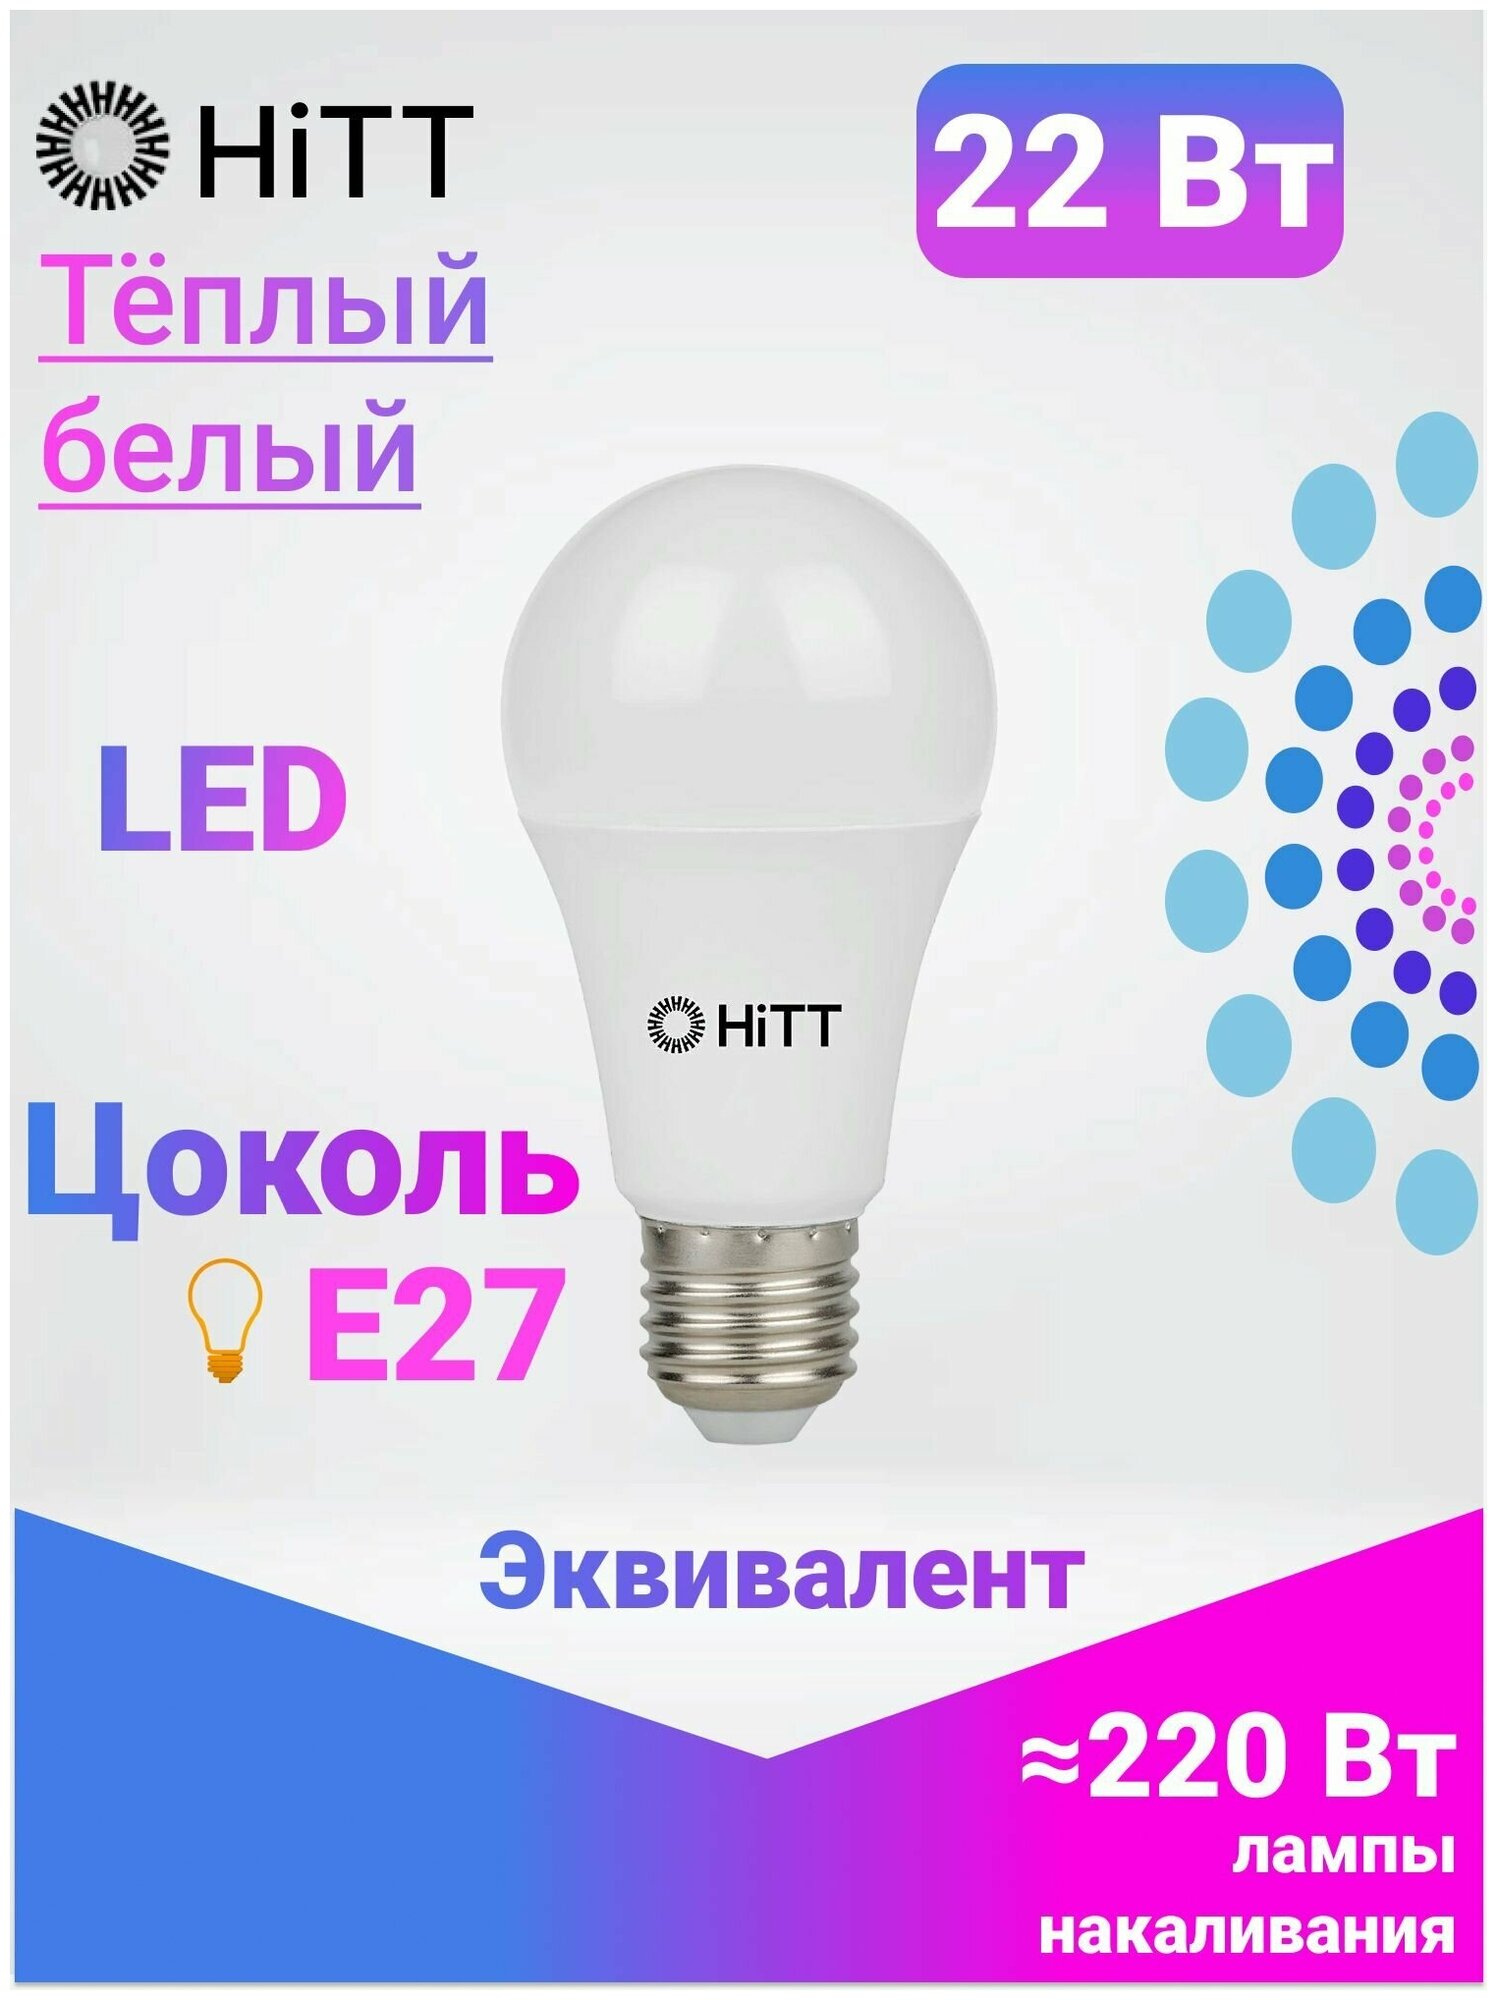 Энергоэффективная светодиодная лампа HiTT 22Вт E27 3000к